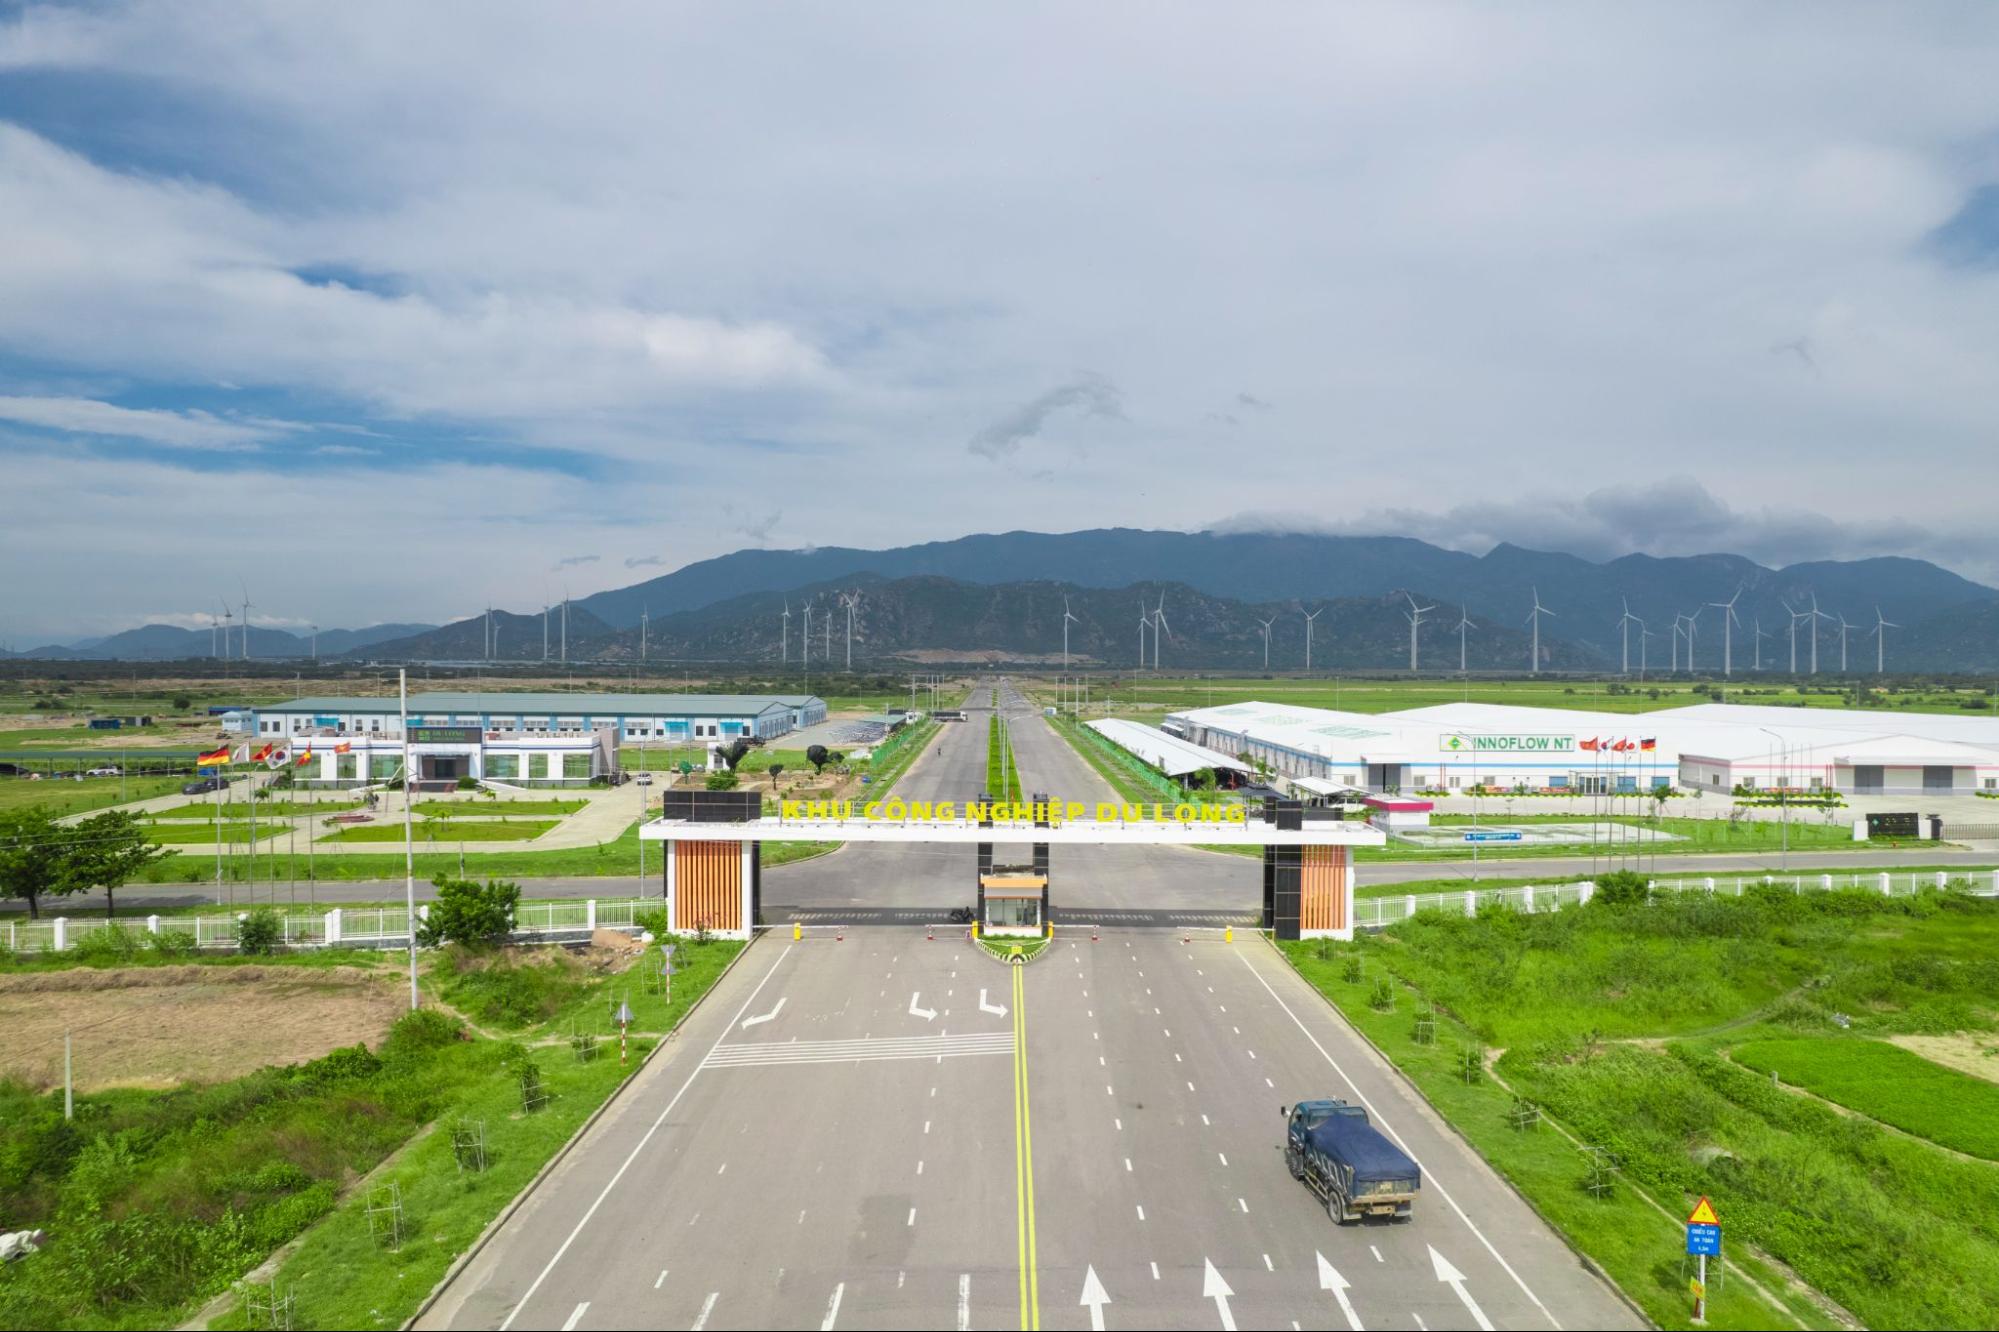 Khu công nghiệp Du Long tại tỉnh Ninh Thuận được đánh giá là điểm đến tiềm năng cho các nhà đầu tư